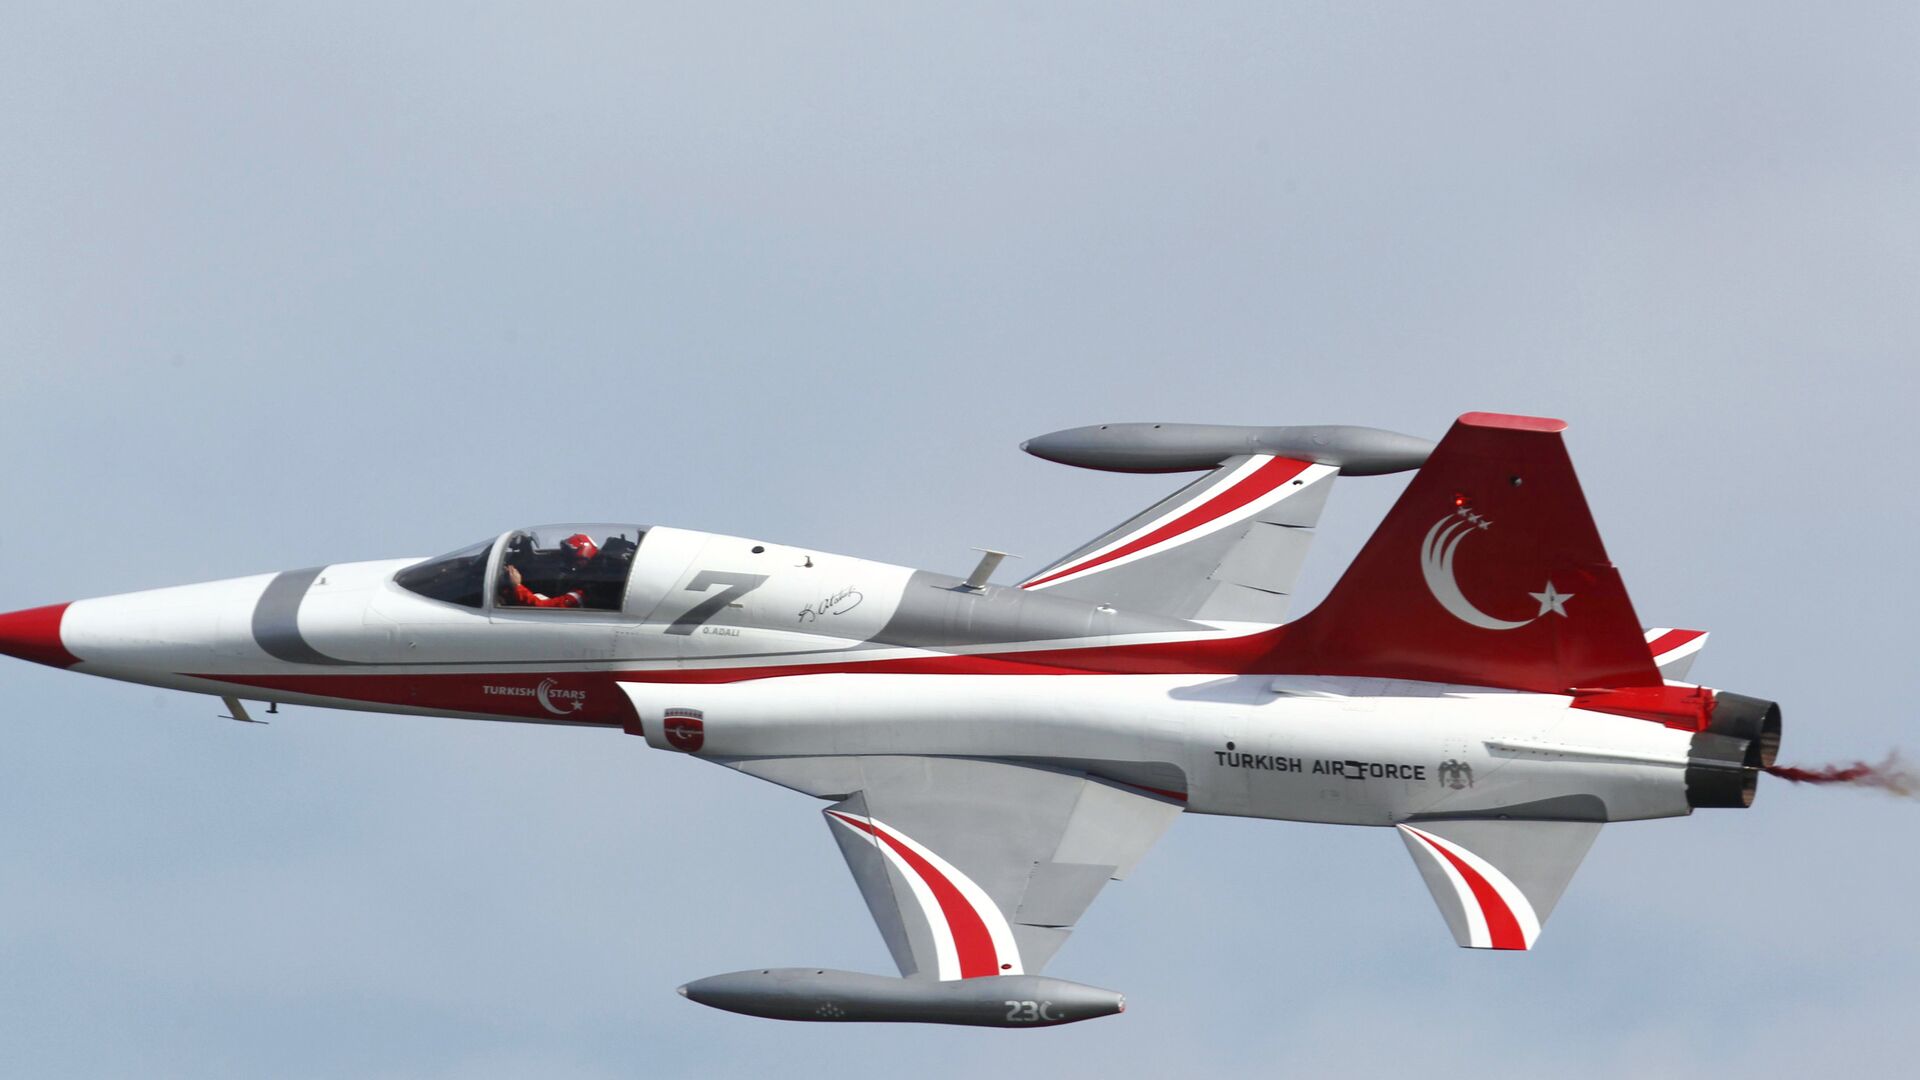 Турски авион Нортроп Ф-5 маневрише током прославе 100. годишњице битке на Дарданелима, Турска, април 2015. - Sputnik Србија, 1920, 07.04.2021